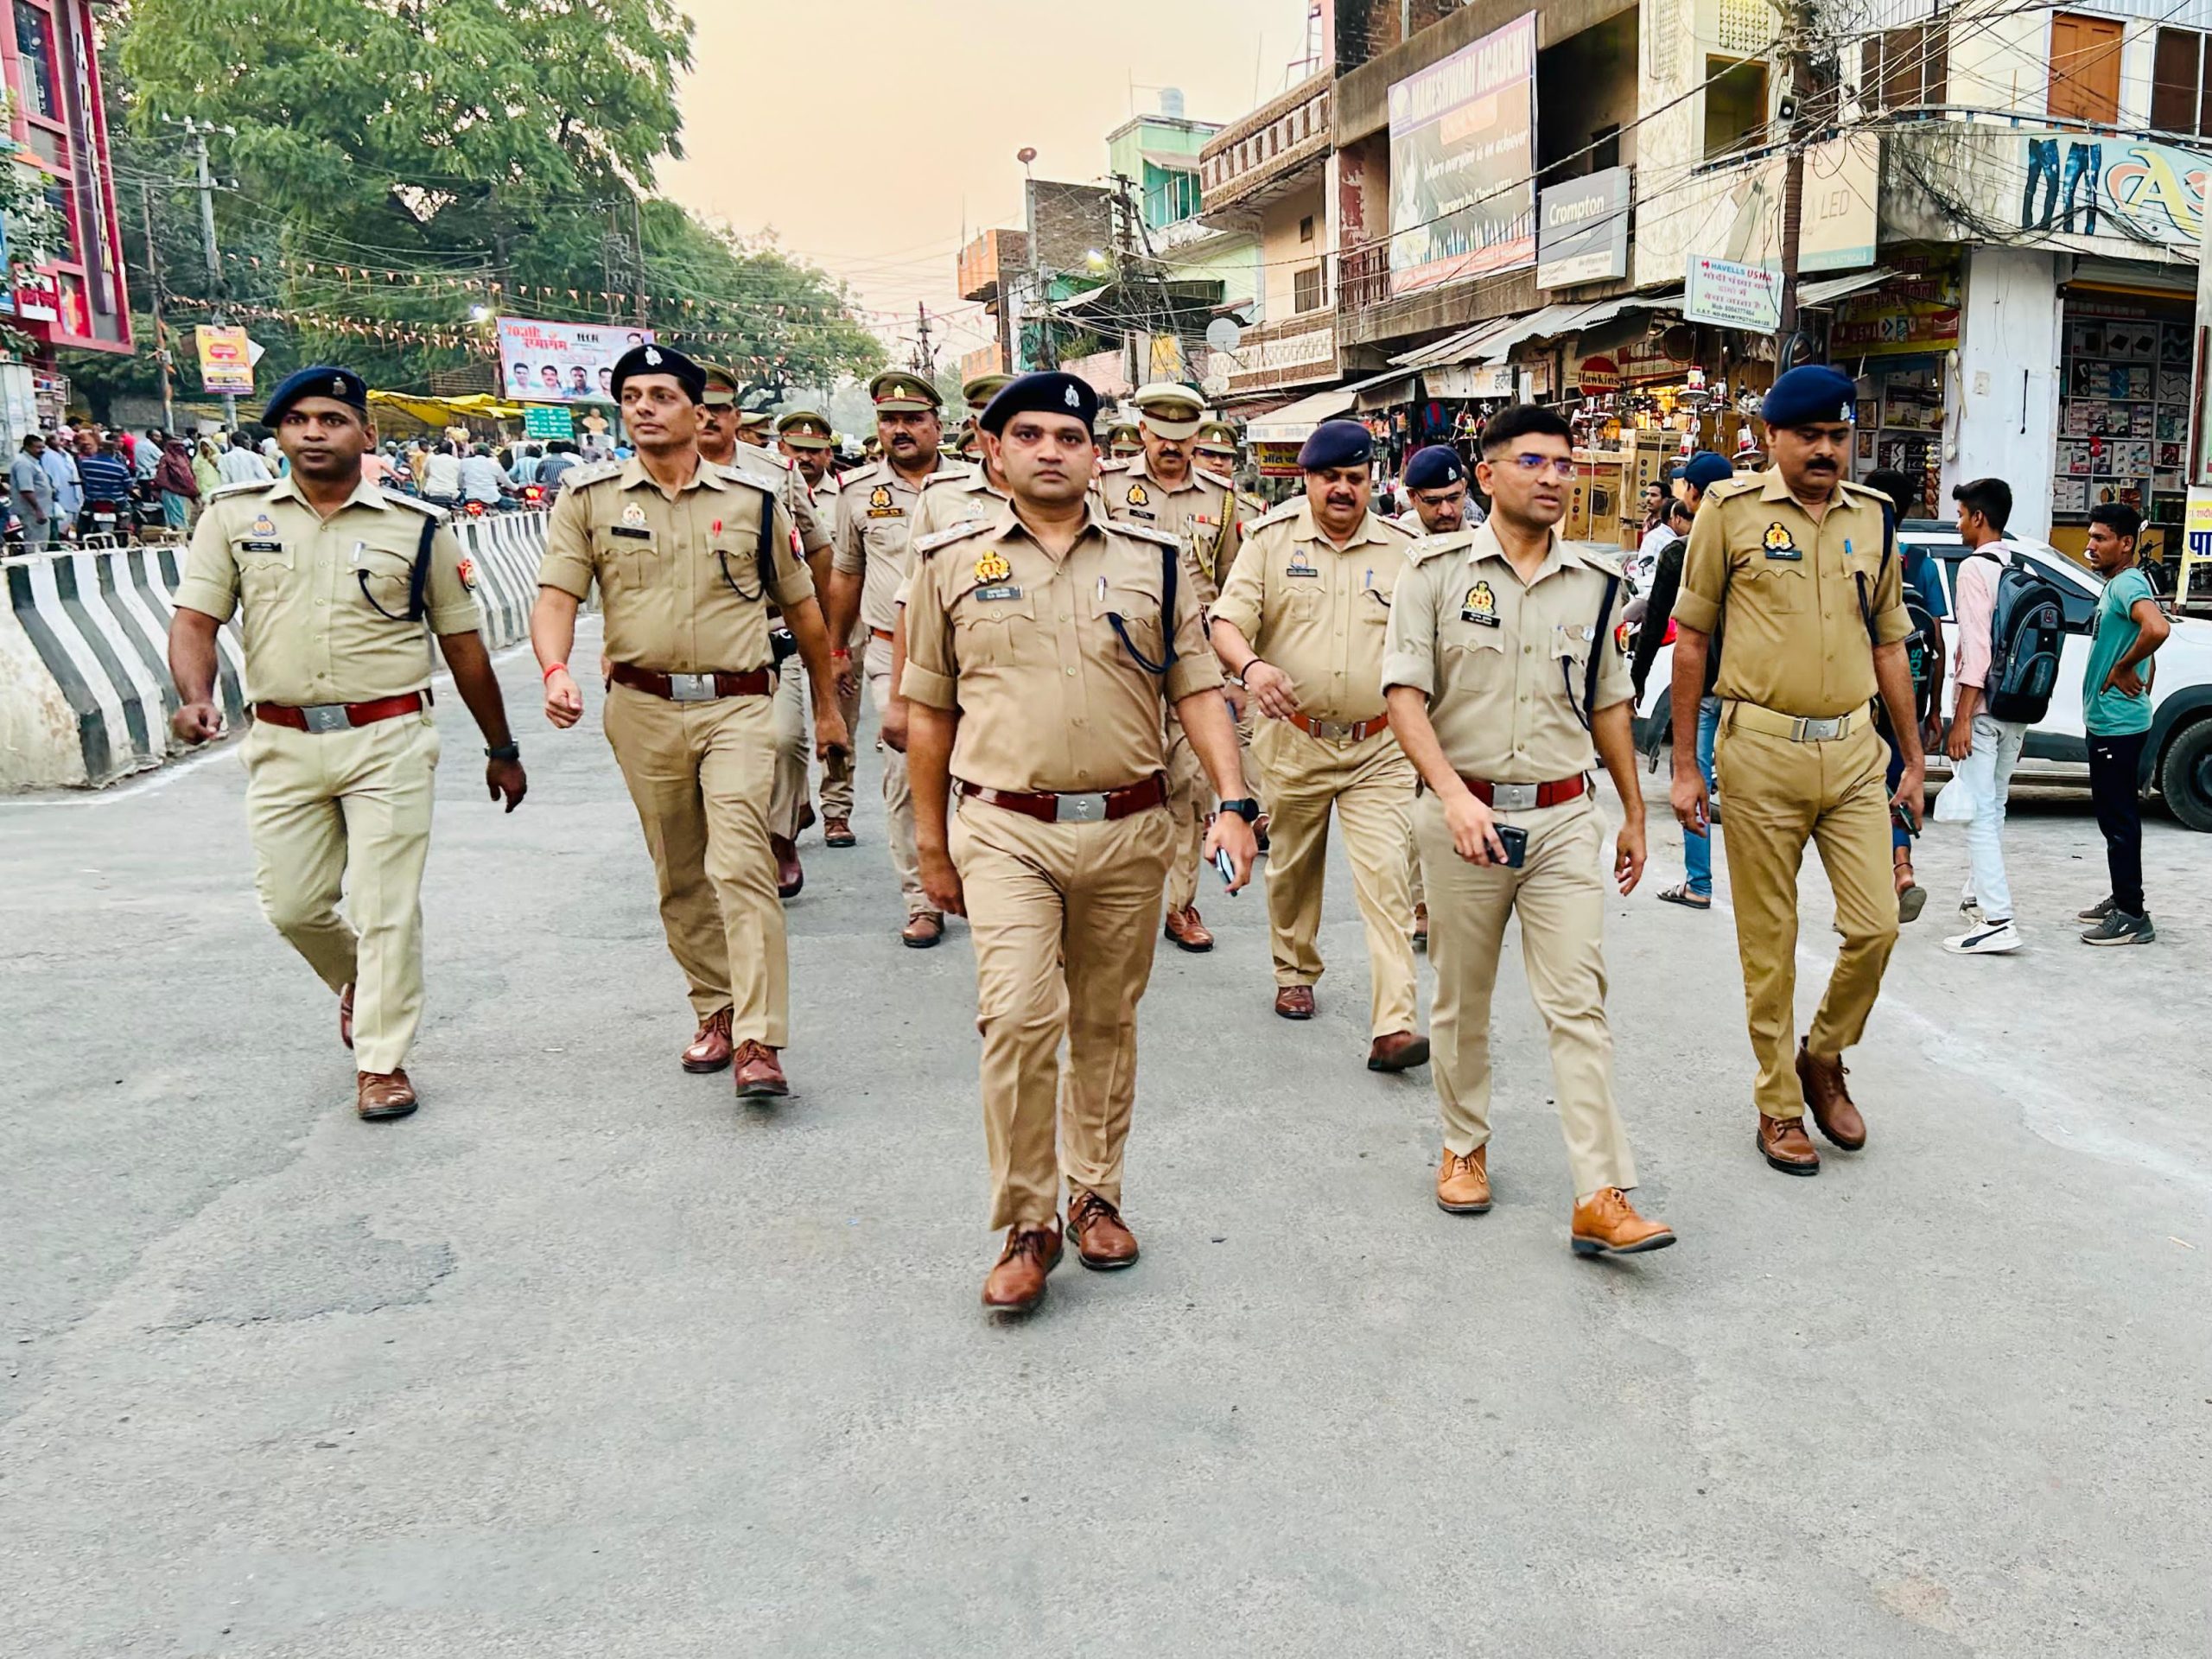 आगामी त्योहारों को देखते हुए एसपी ने भारी पुलिस वल के साथ शहरी क्षेत्र में पैदल गश्त कर आमजन को कराया सुरक्षा का अहसास